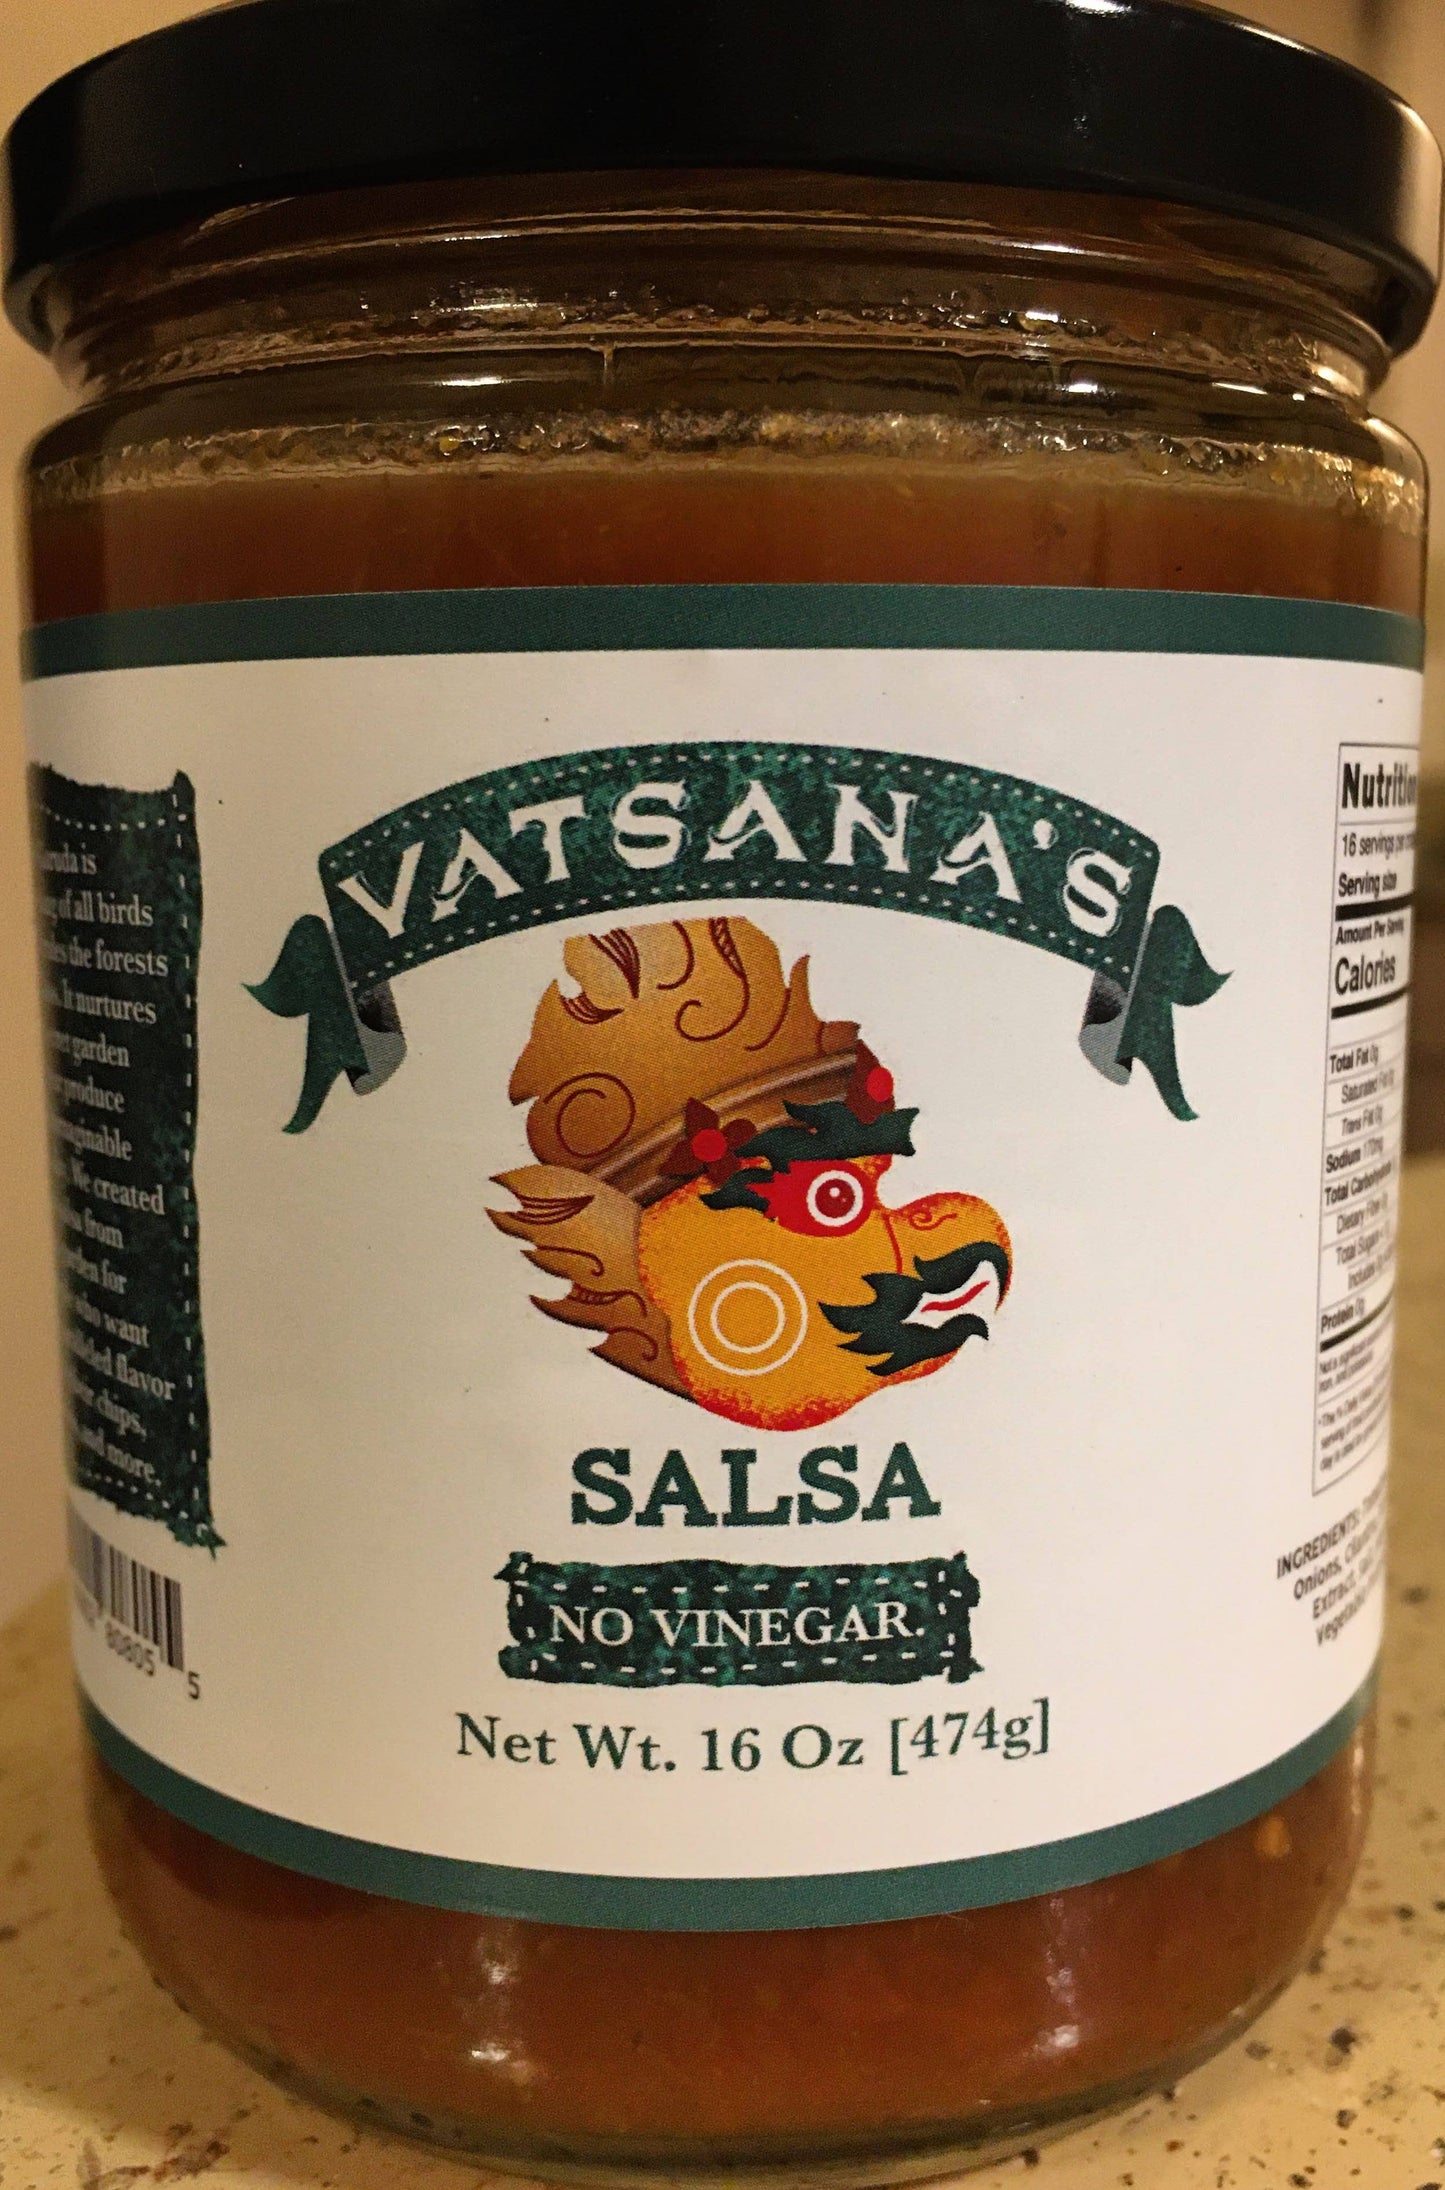 Vatsana's Salsa